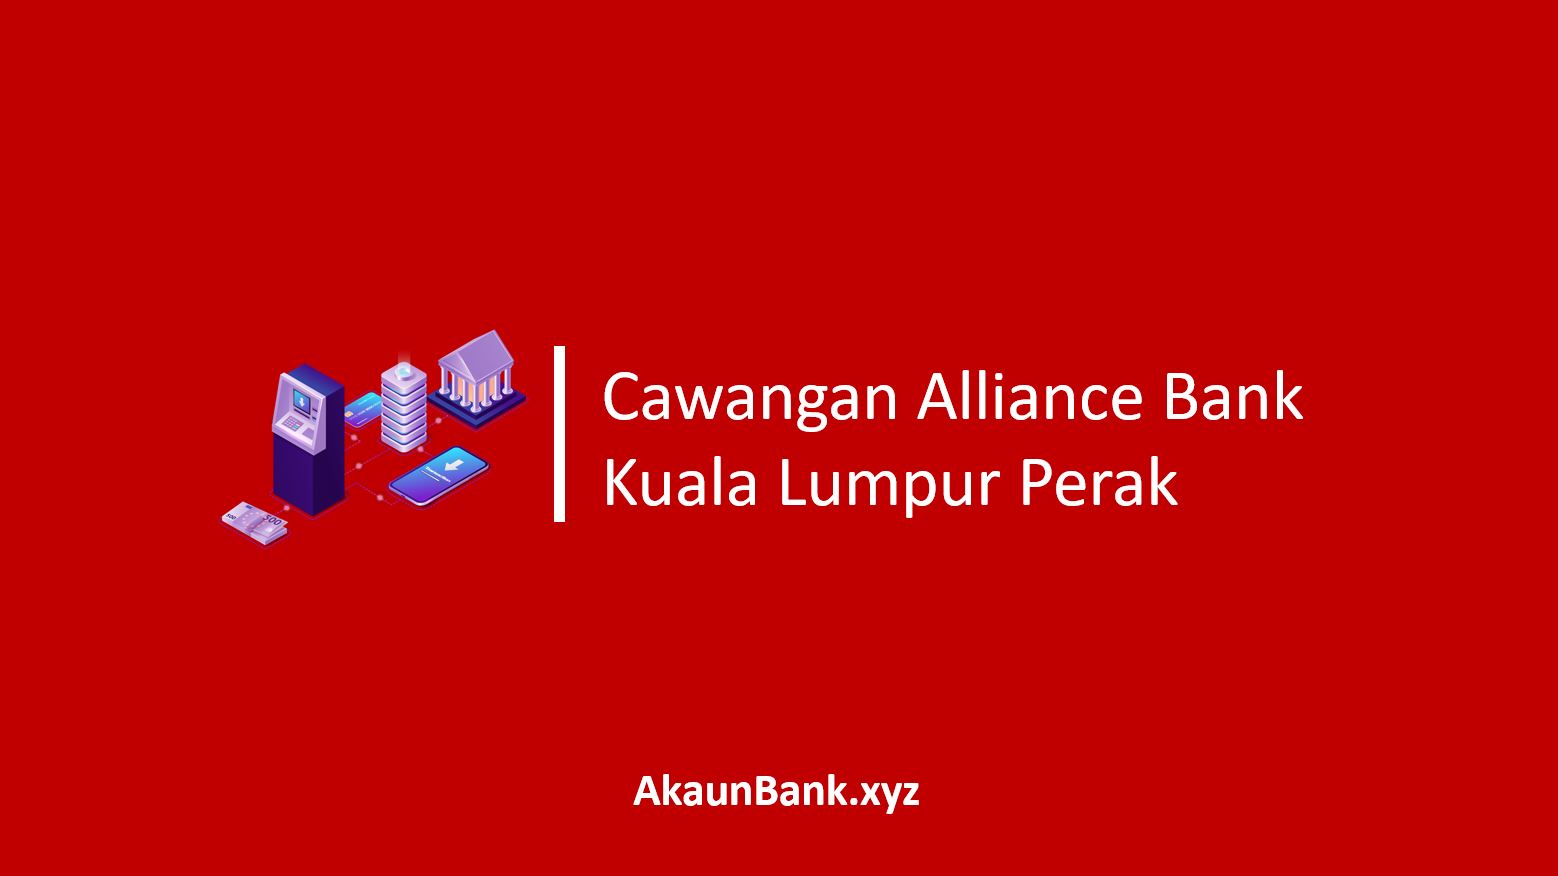 Cawangan Alliance Bank Kuala Lumpur Perak